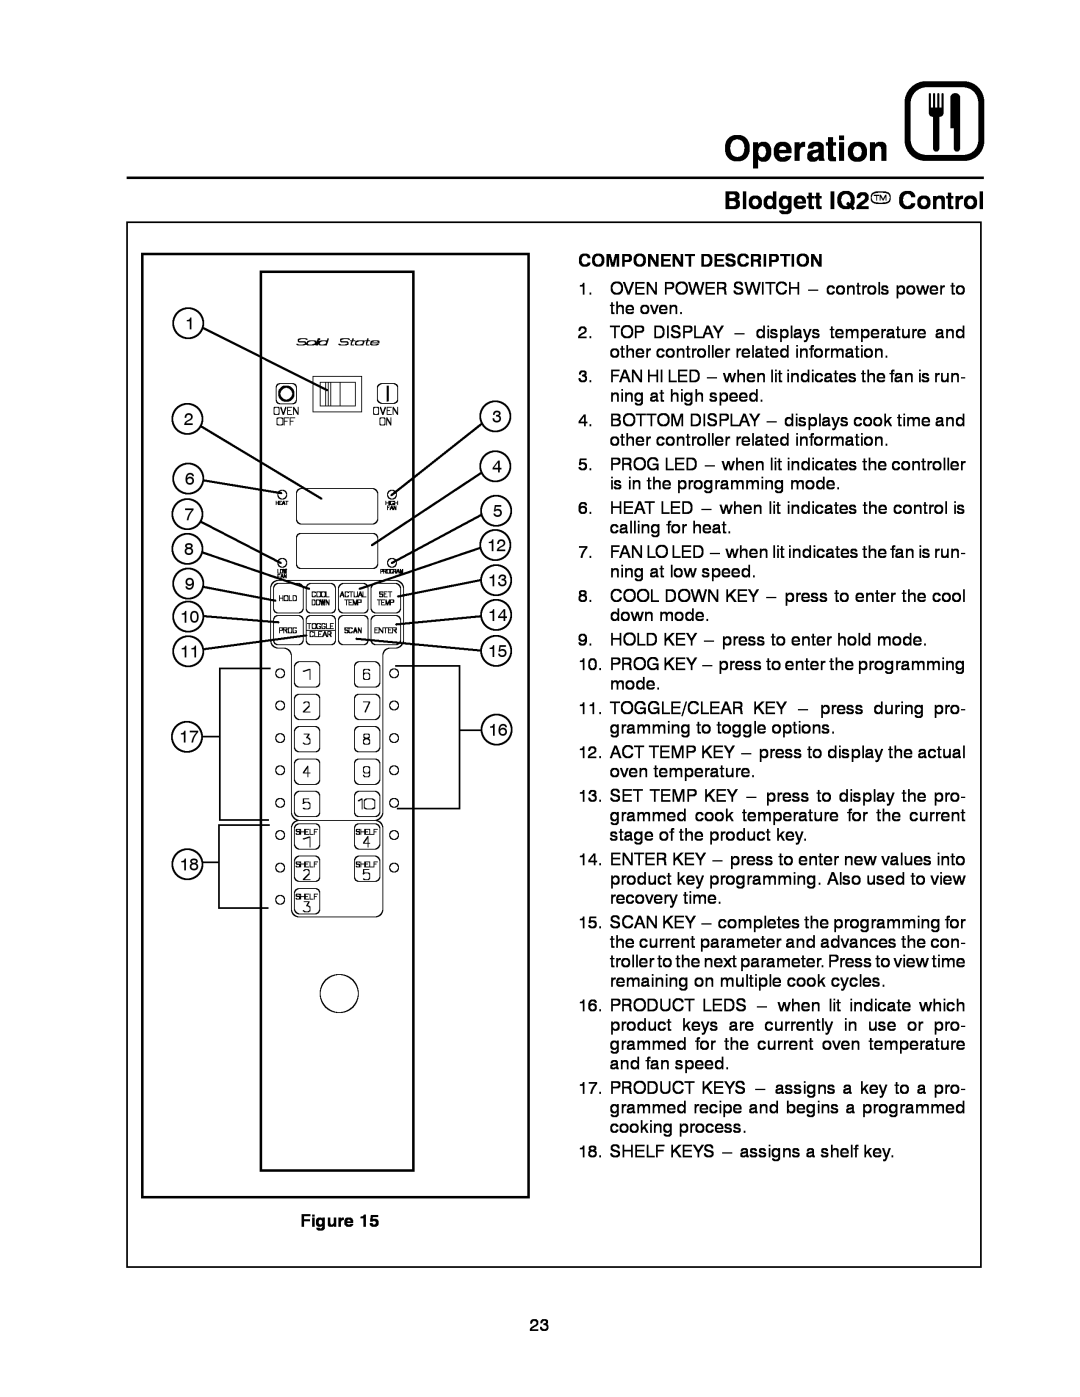 Blodgett DFG-100, DFG-200 manual Blodgett IQ2T Control, Operation, Component Description 